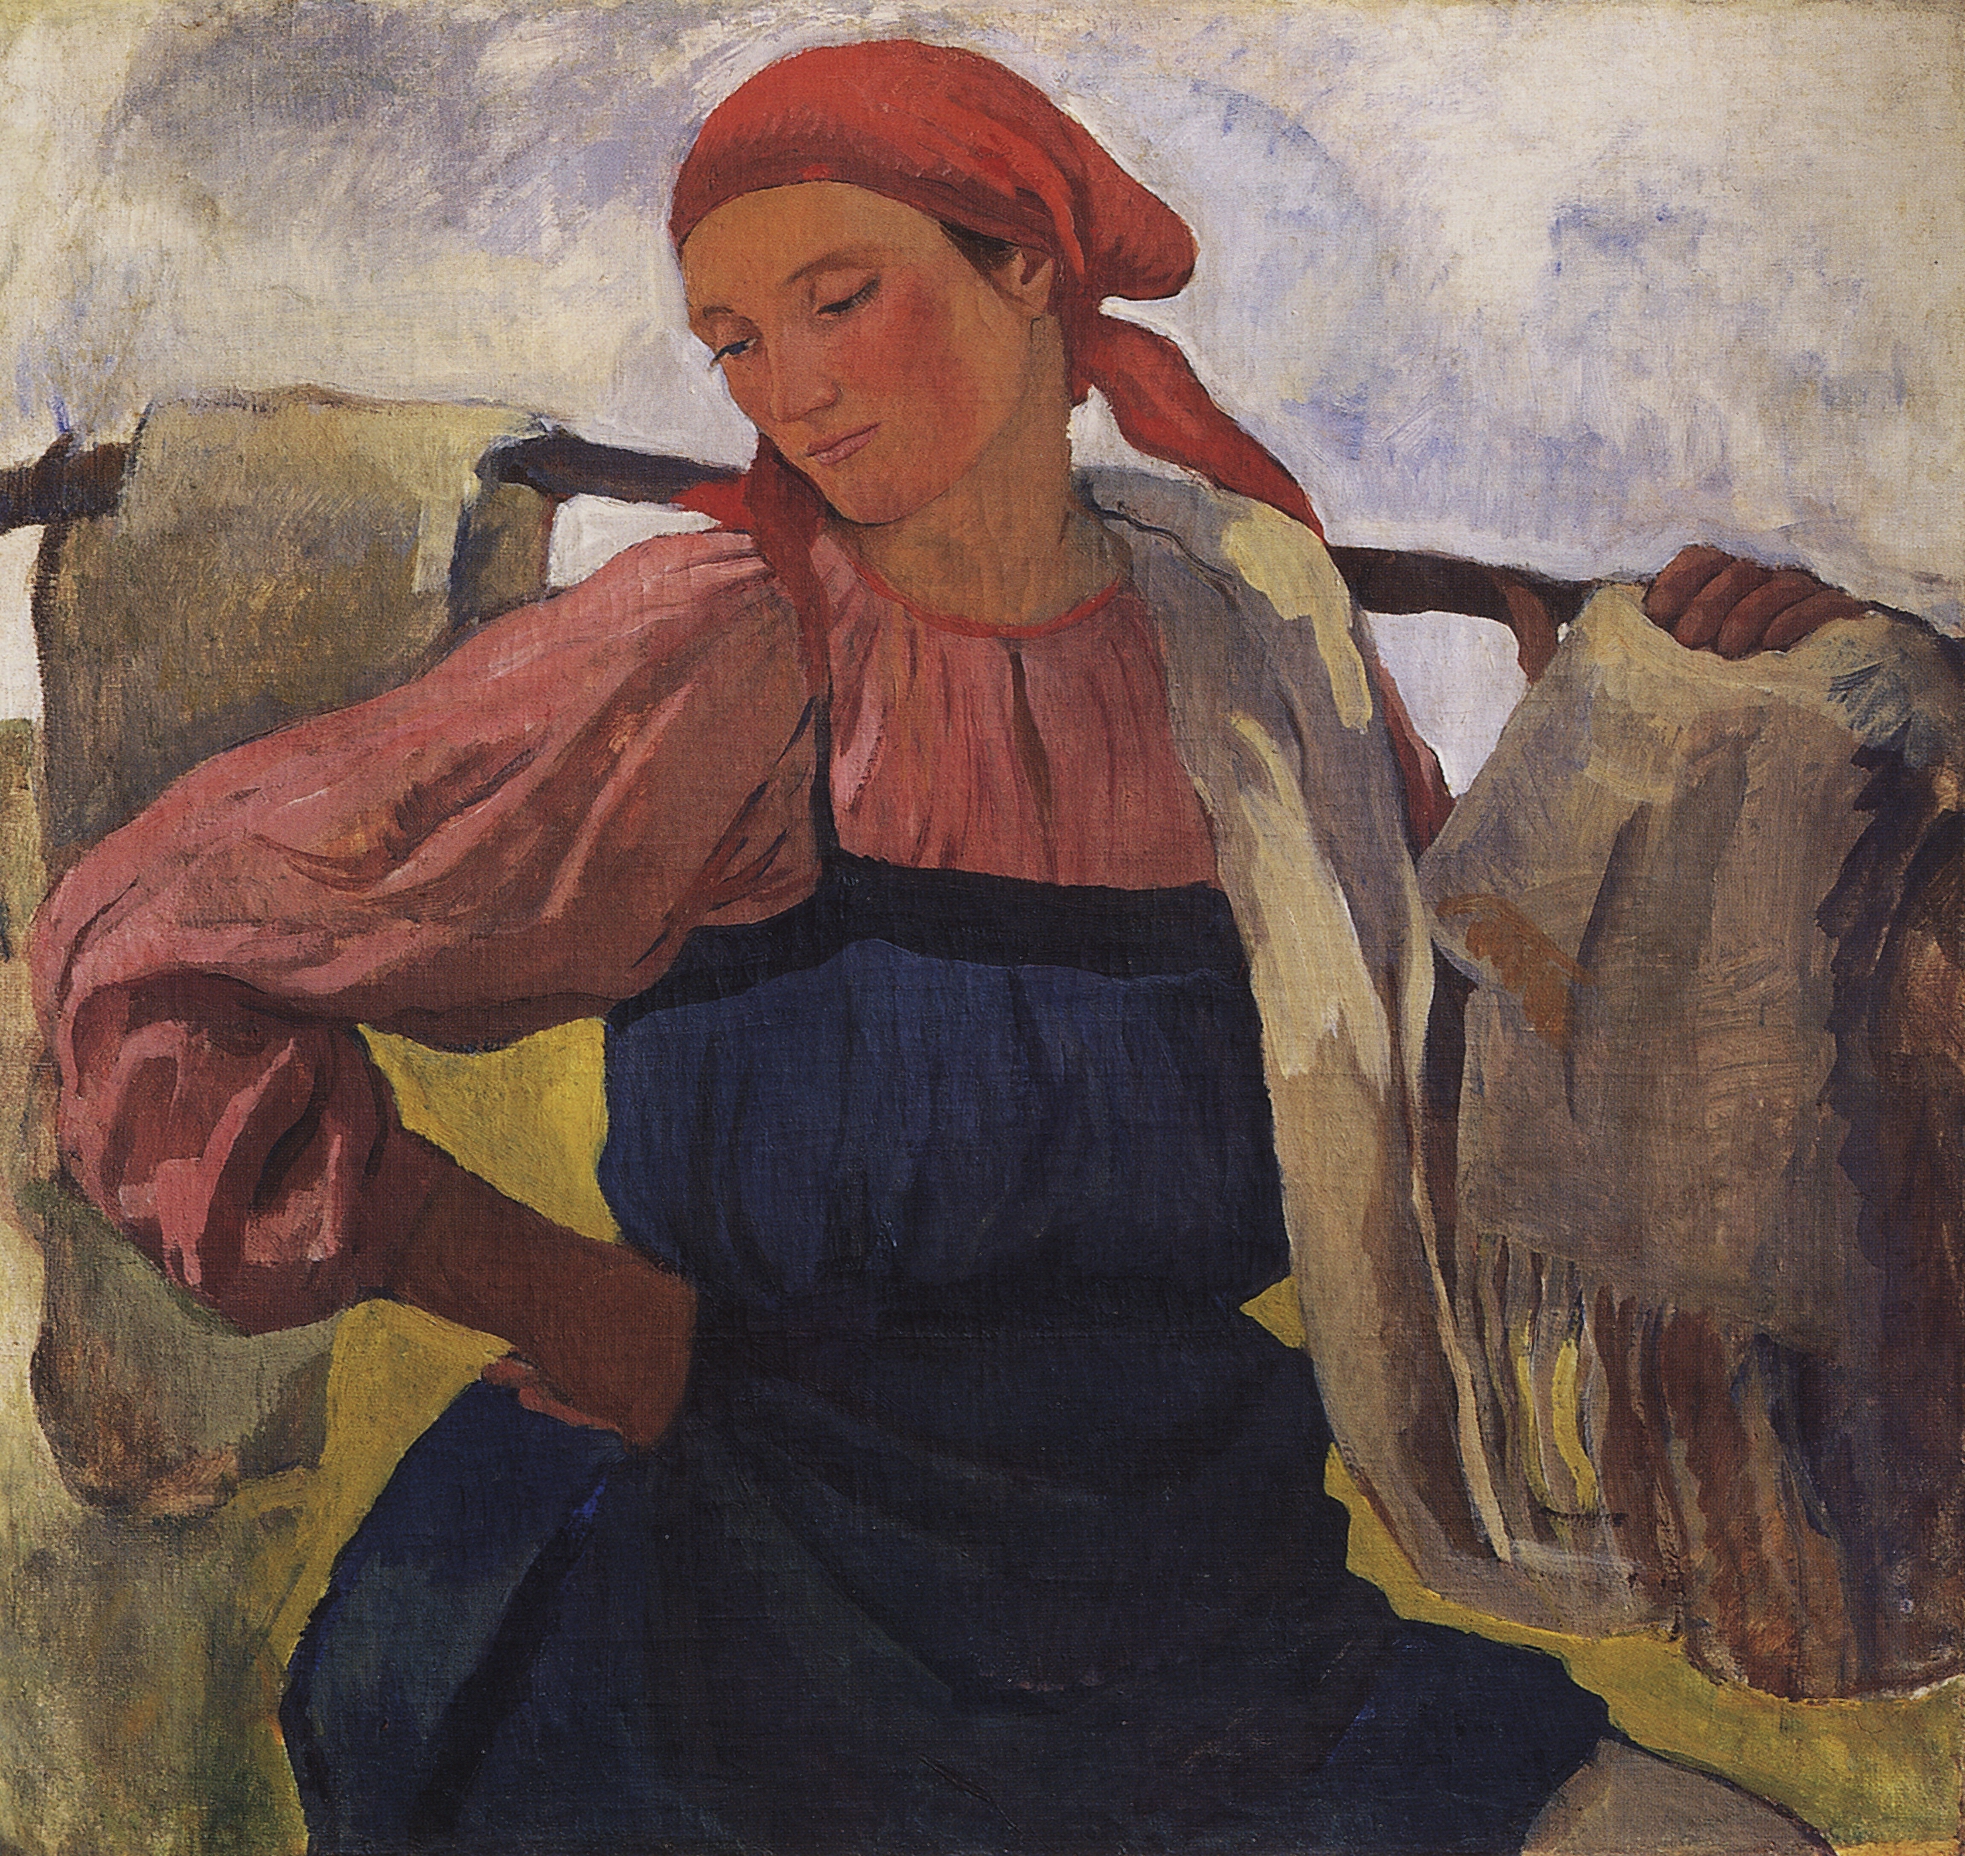 Une Femme avec une toile sur une palanche by Zinaida Serebryakova - 1917 